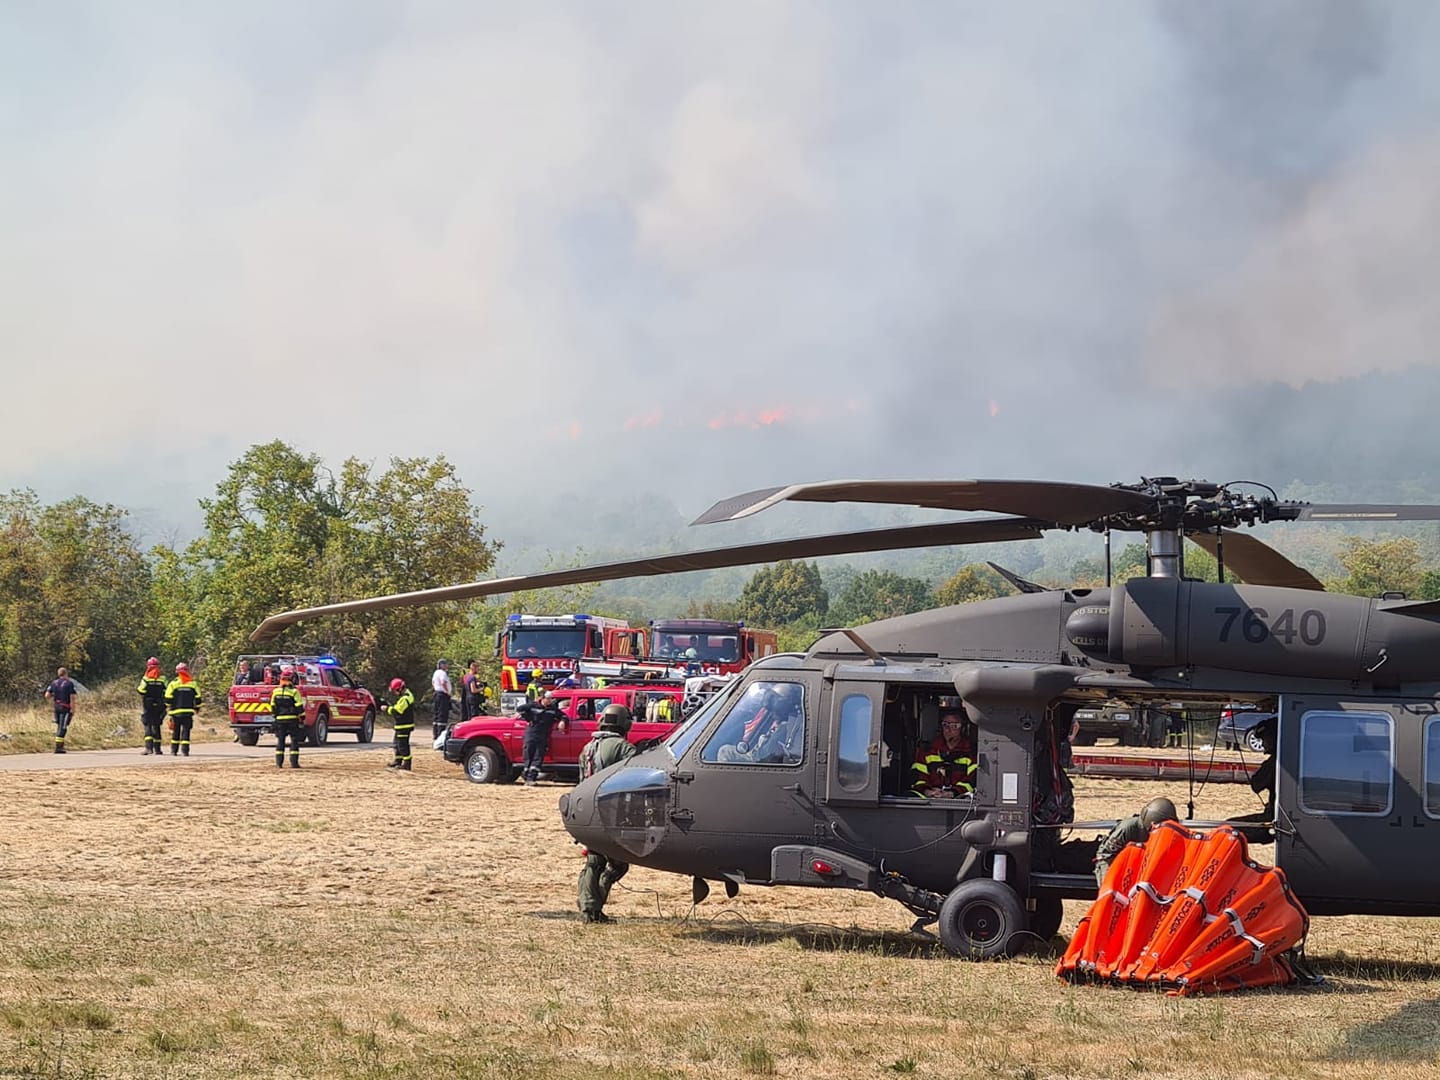 UH-60M Black Hawk při hašení požáru v Hřensku / Foto: Facebook.com @tydenikpolicie